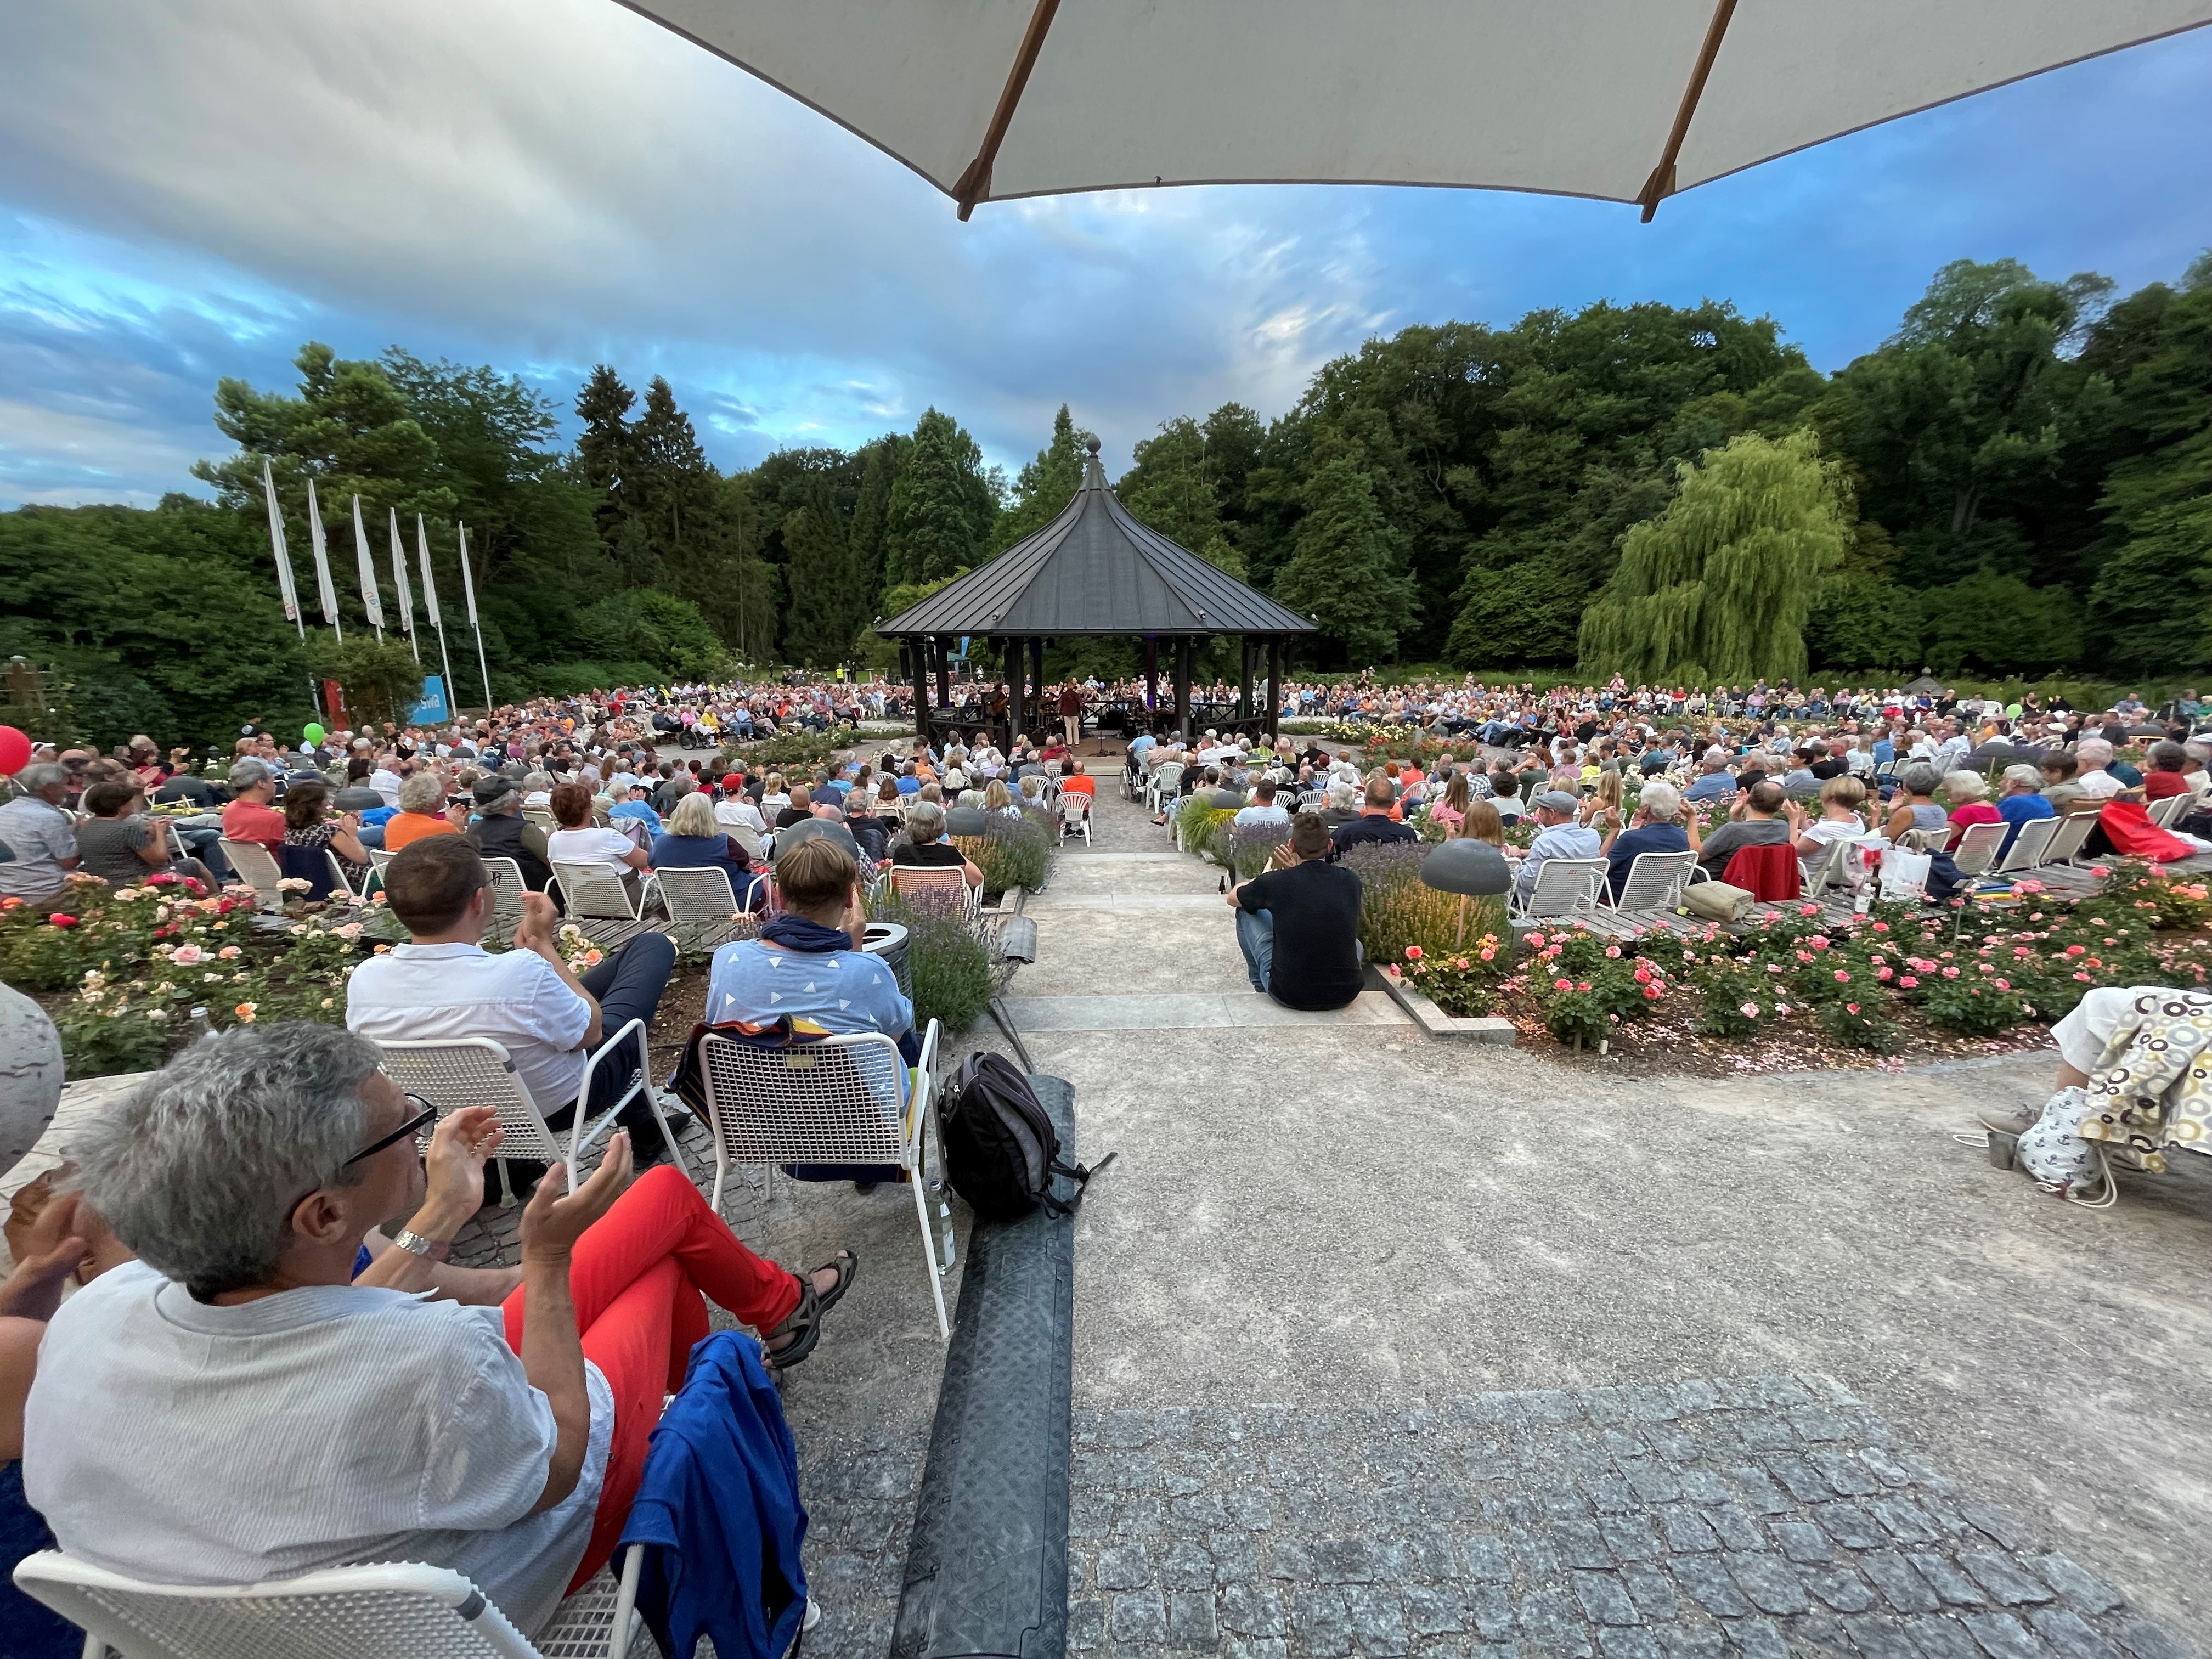 Totale vom Pavillon im Rosengarten, in dem ein Orchester spielt; umringt von Zuschauern in weißen Gartenstühlen